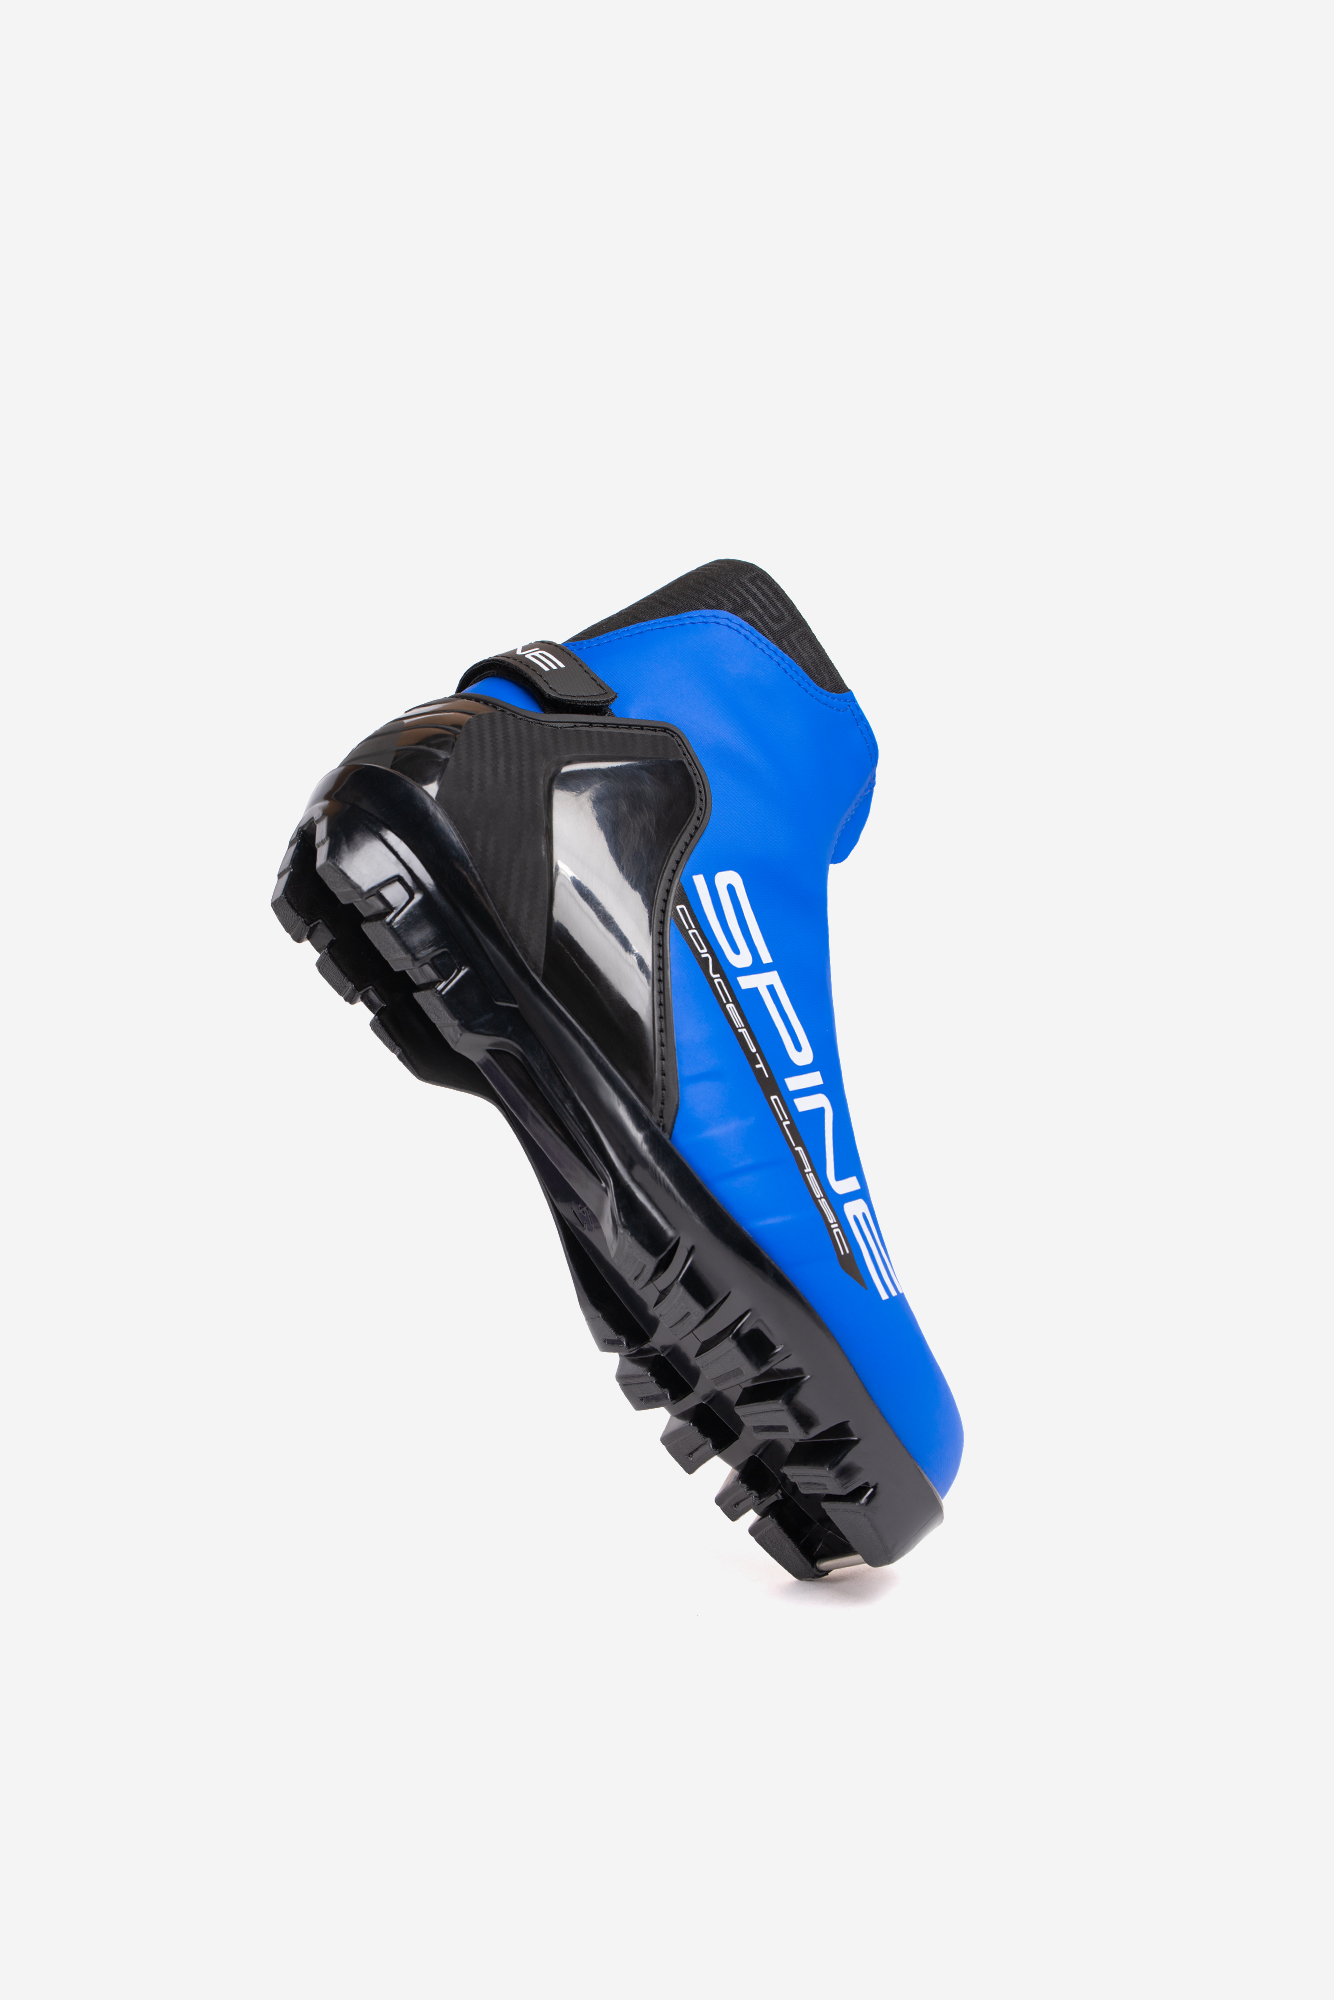 Лыжные ботинки SNS Spine Concept Classic (494/1-22) (синий) 1334_2000